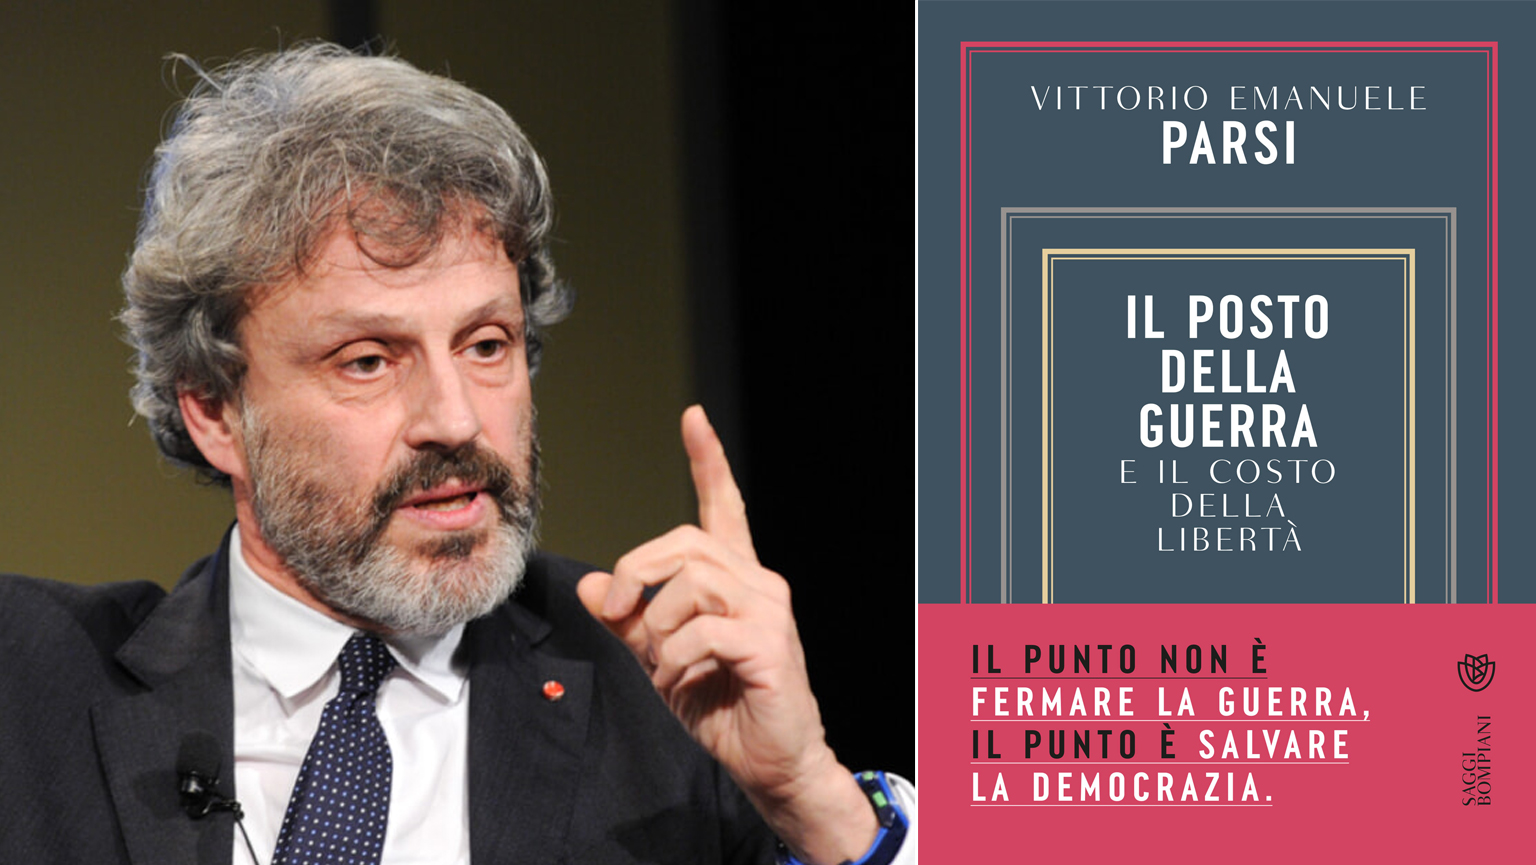 “Il posto della guerra e il costo della libertà”, Vittorio Emanuele Parsi a UniMc